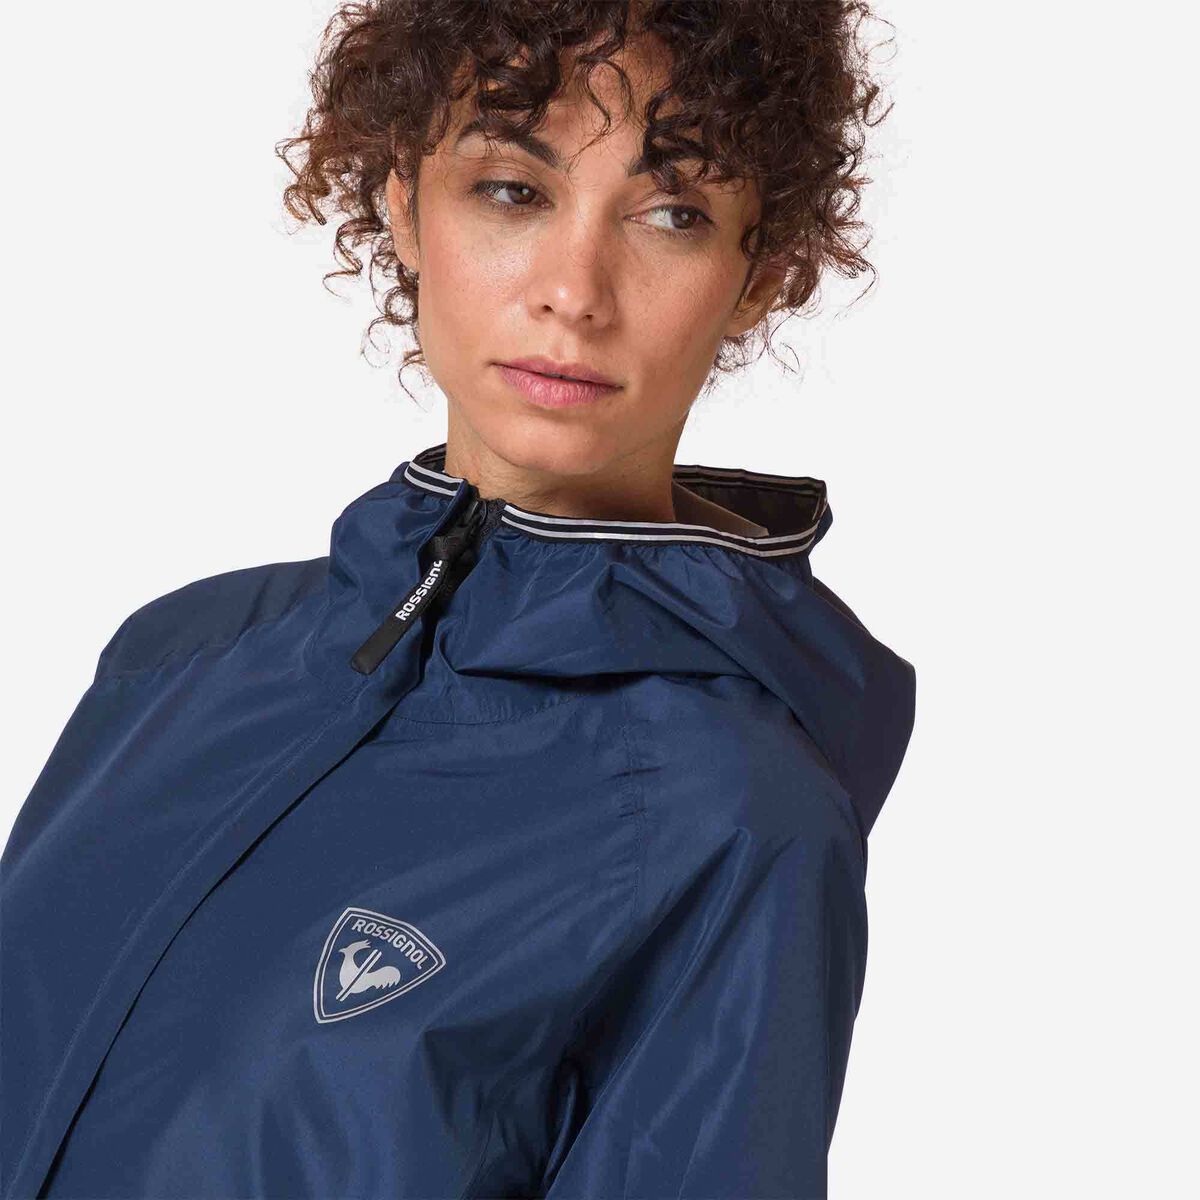 Rossignol Women's Active Rain Jacket blue